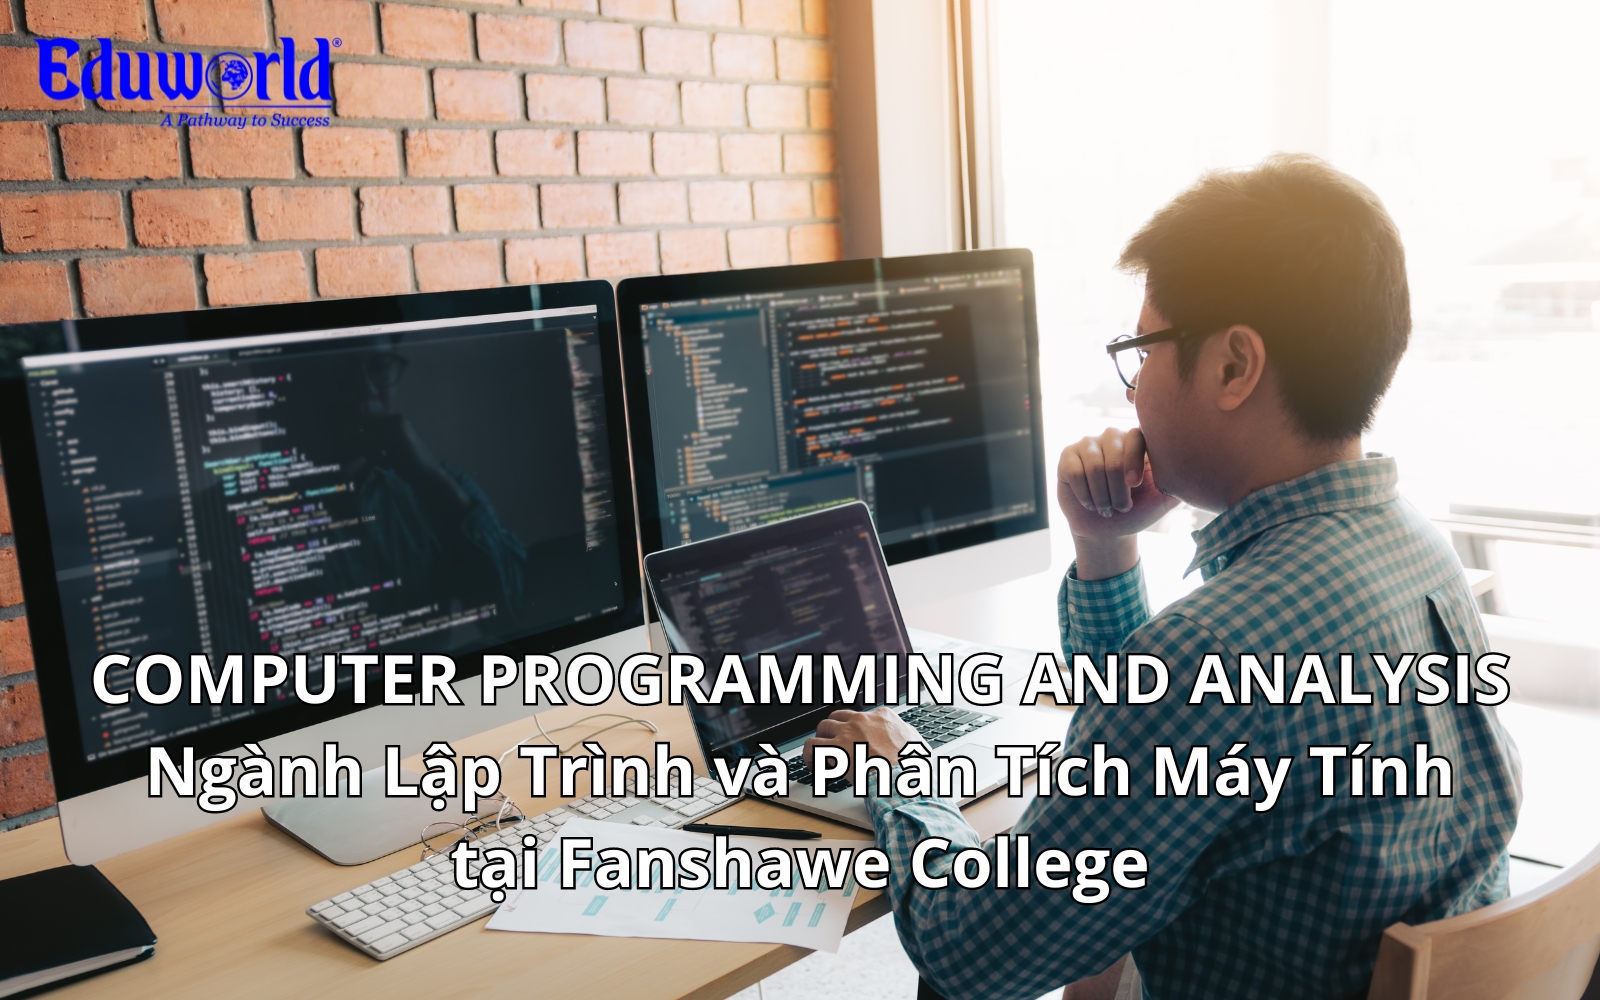 COMPUTER PROGRAMMING AND ANALYSIS - Ngành Lập Trình và Phân Tích Máy Tính tại Fanshawe College